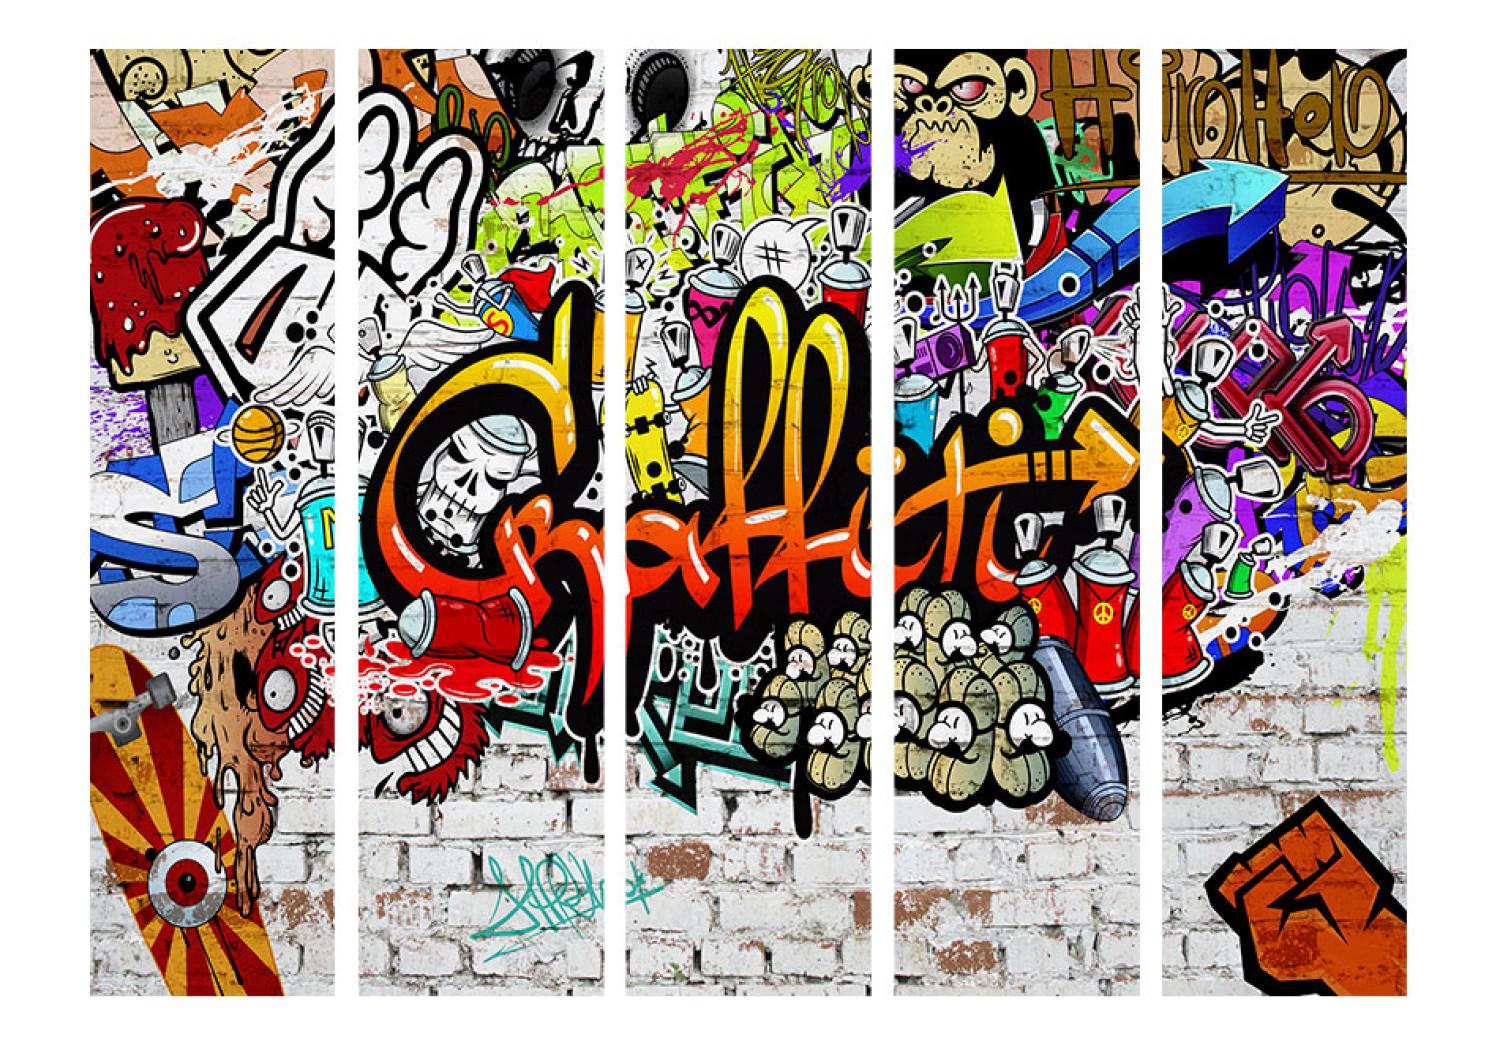 Biombo original Estilo colorido - grafiti urbano artístico en textura de ladrillos